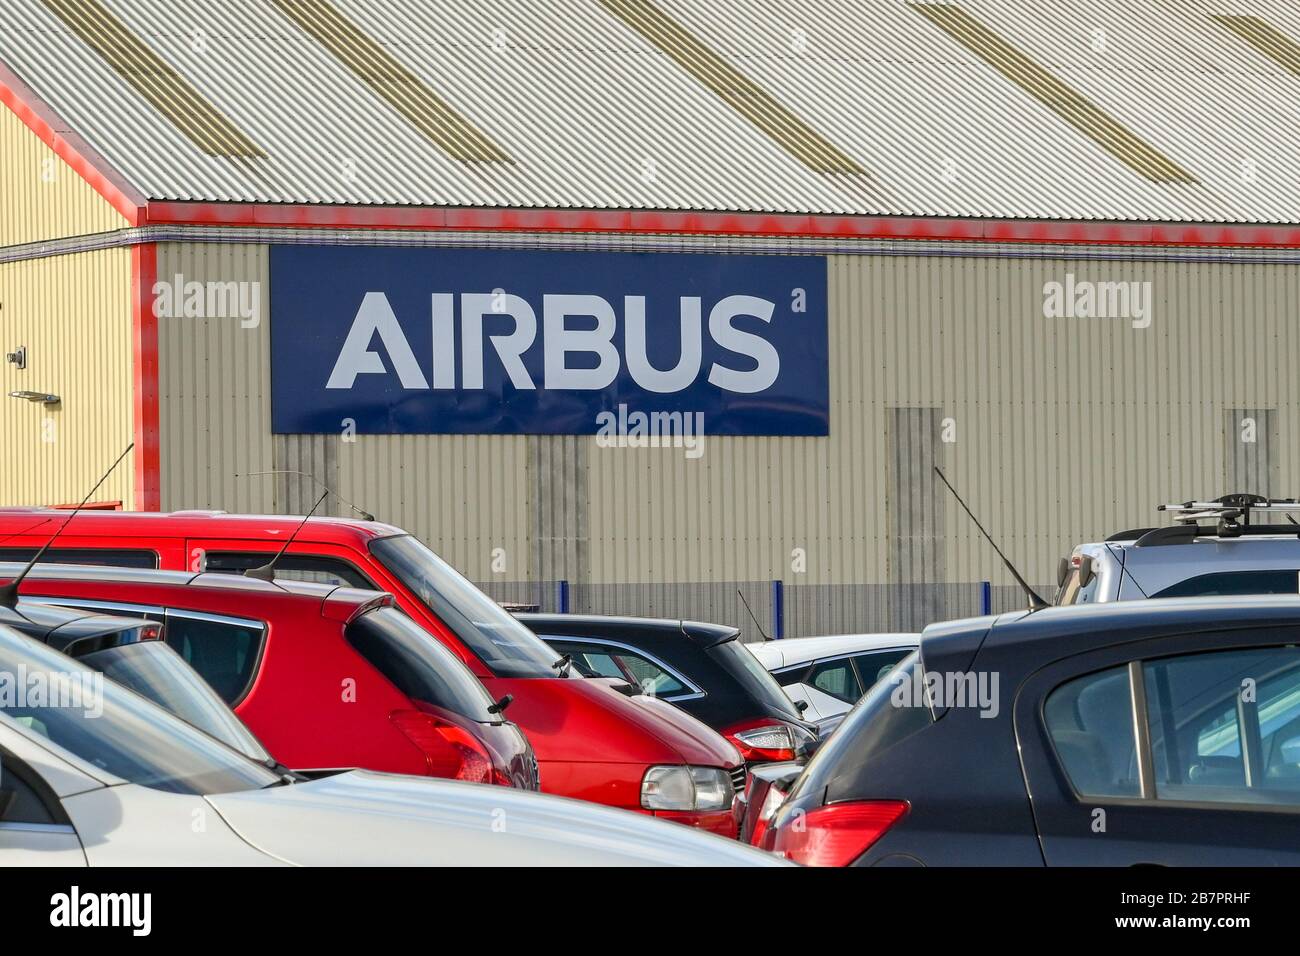 BROUGHTON, WALES - MÄRZ 2020: Schild an der Seite eines Fabrikgebäudes im Airbus-Werk in Broughton, wobei die Autos der Mitarbeiter im Vordergrund stehen. Stockfoto